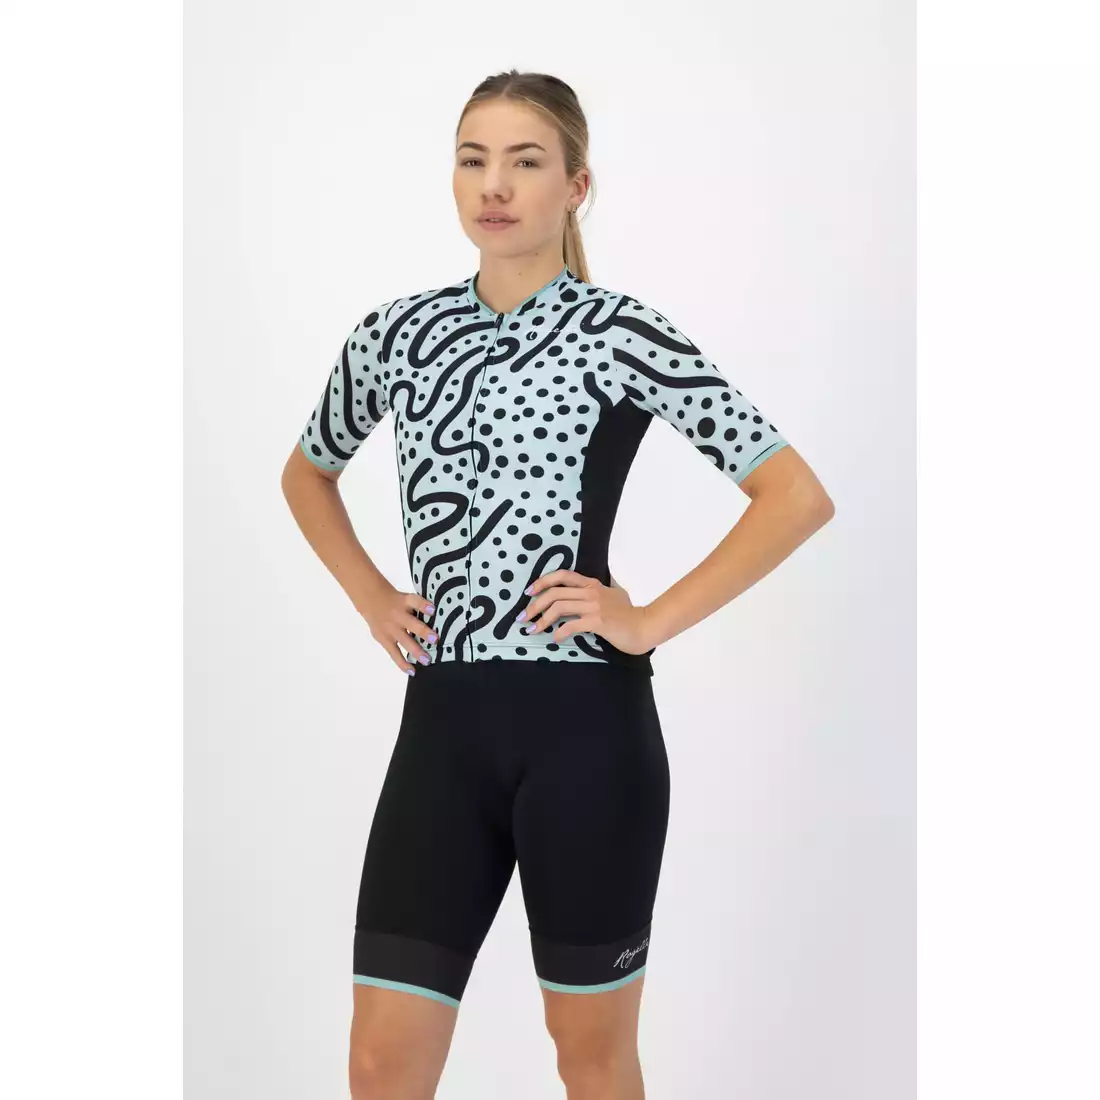 Rogelli ABSTRACT tricou de ciclism pentru femei, turcoaz-negru